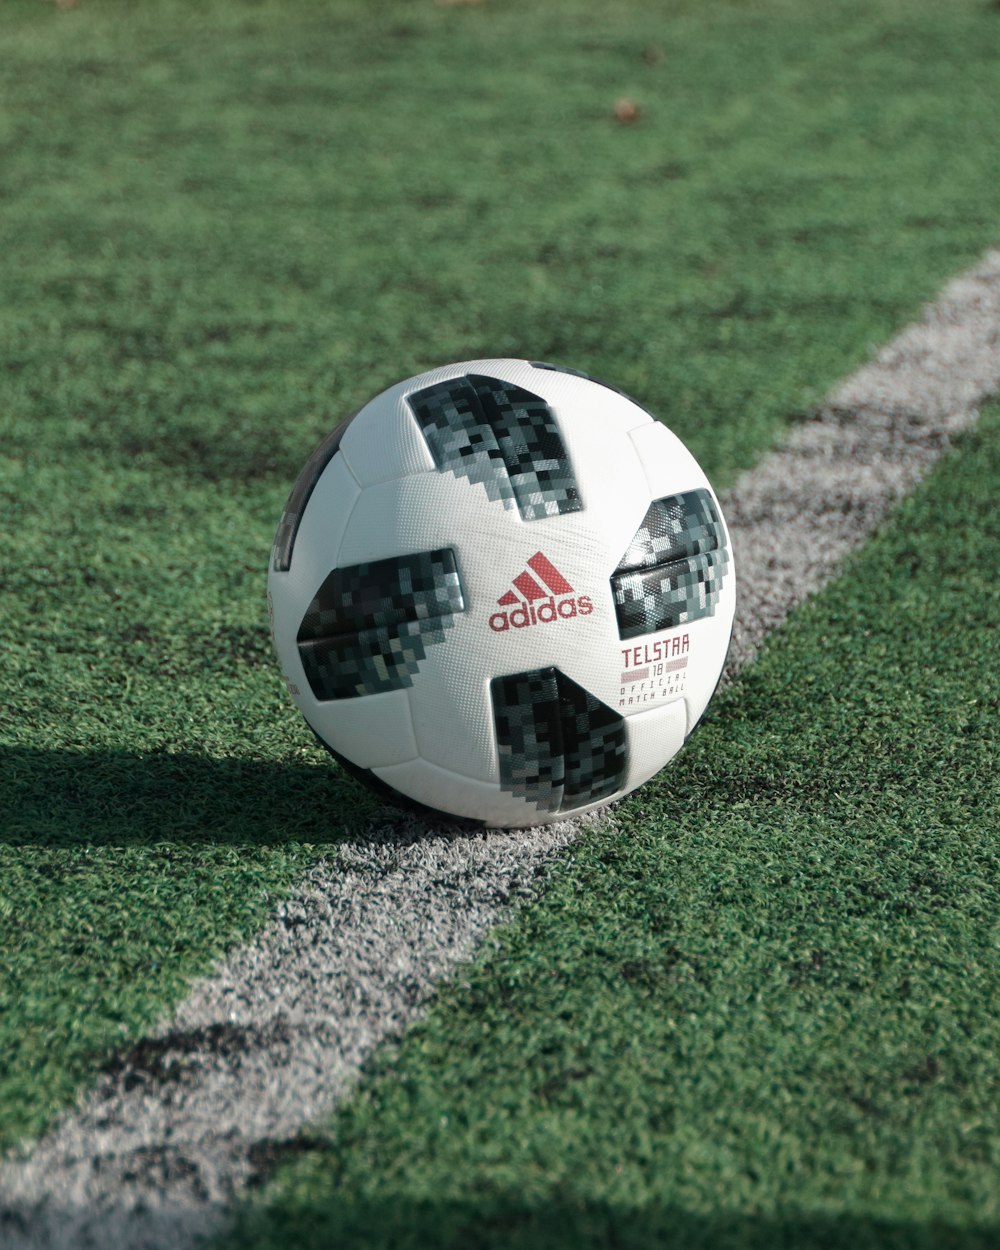 Fotografia em close-up da bola de futebol da adidas no campo